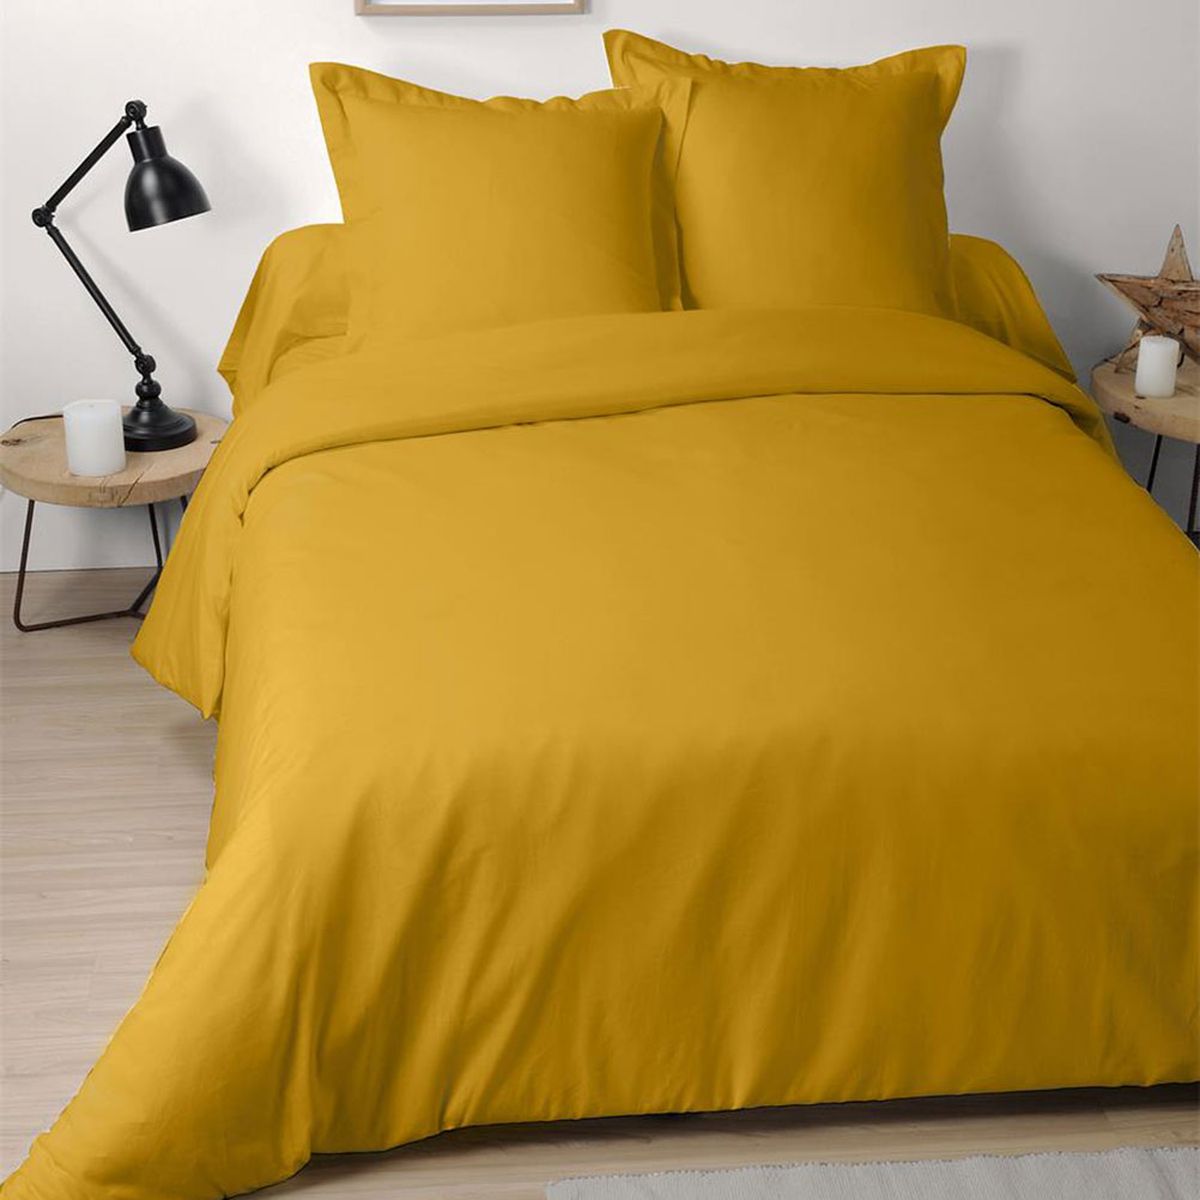 Pillow case 65 x 65 cm - Mustard yellow